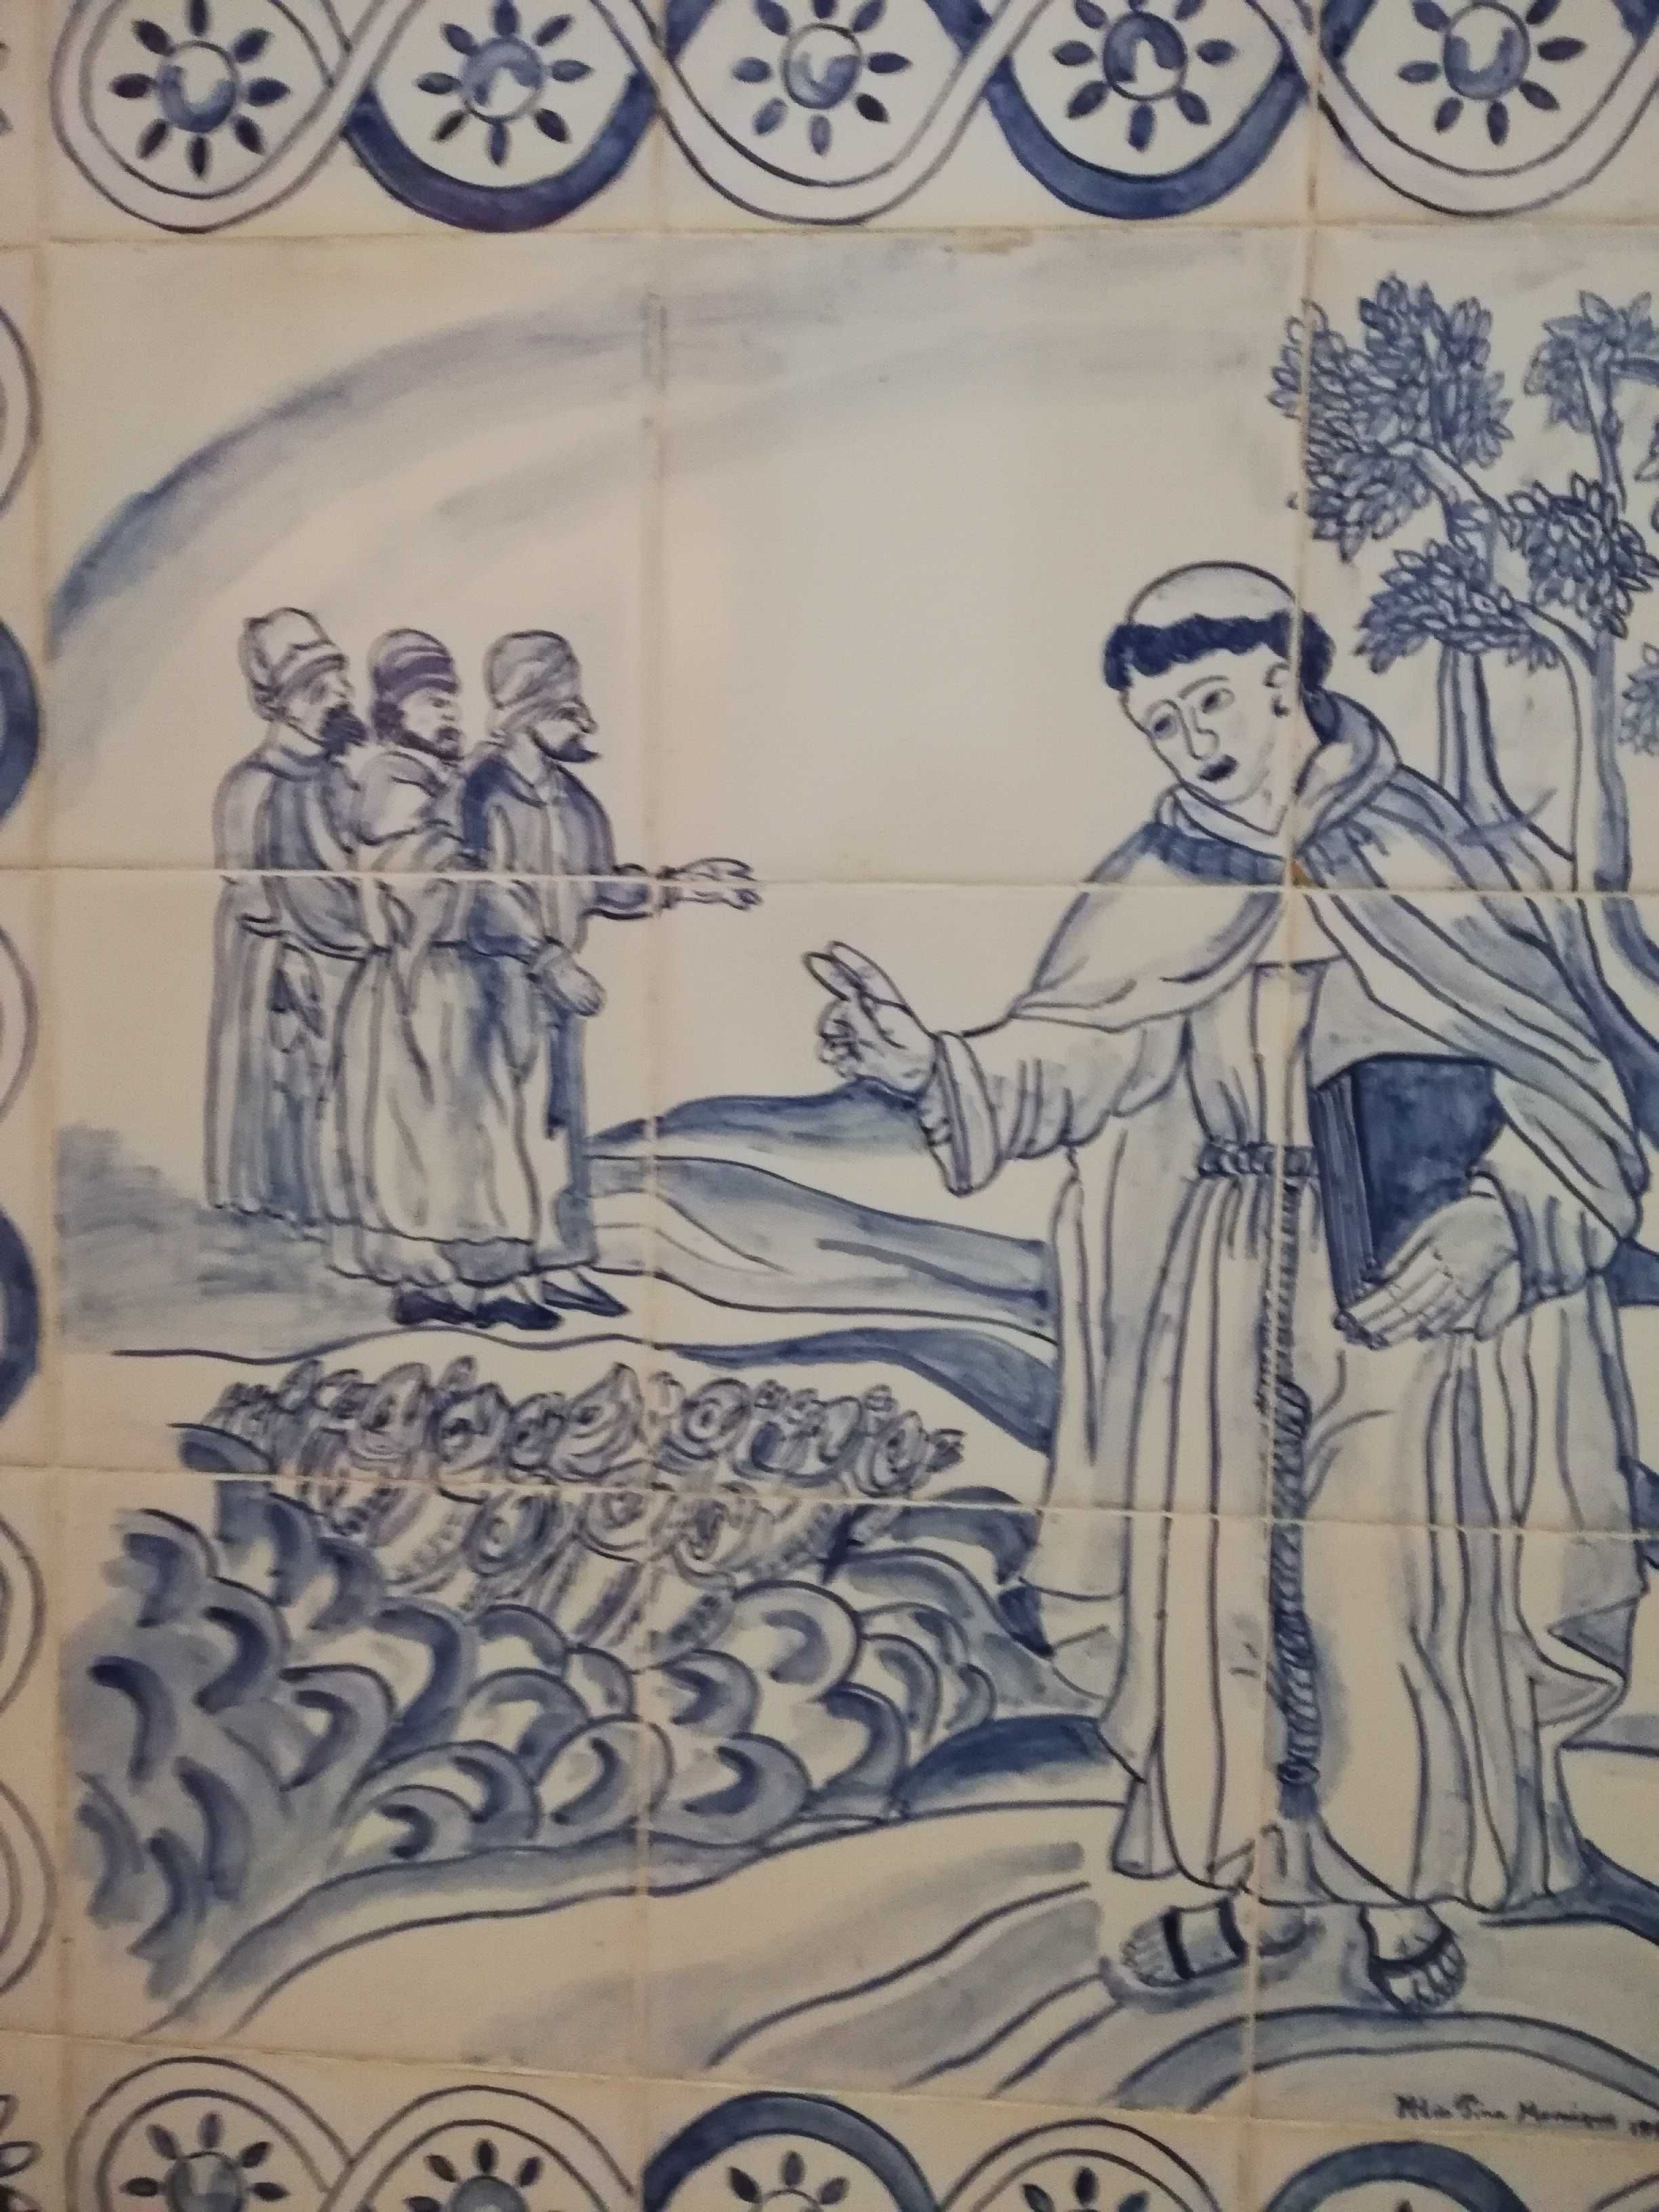 Quadro em azulejos representando o sermão de Sto António aos peixes